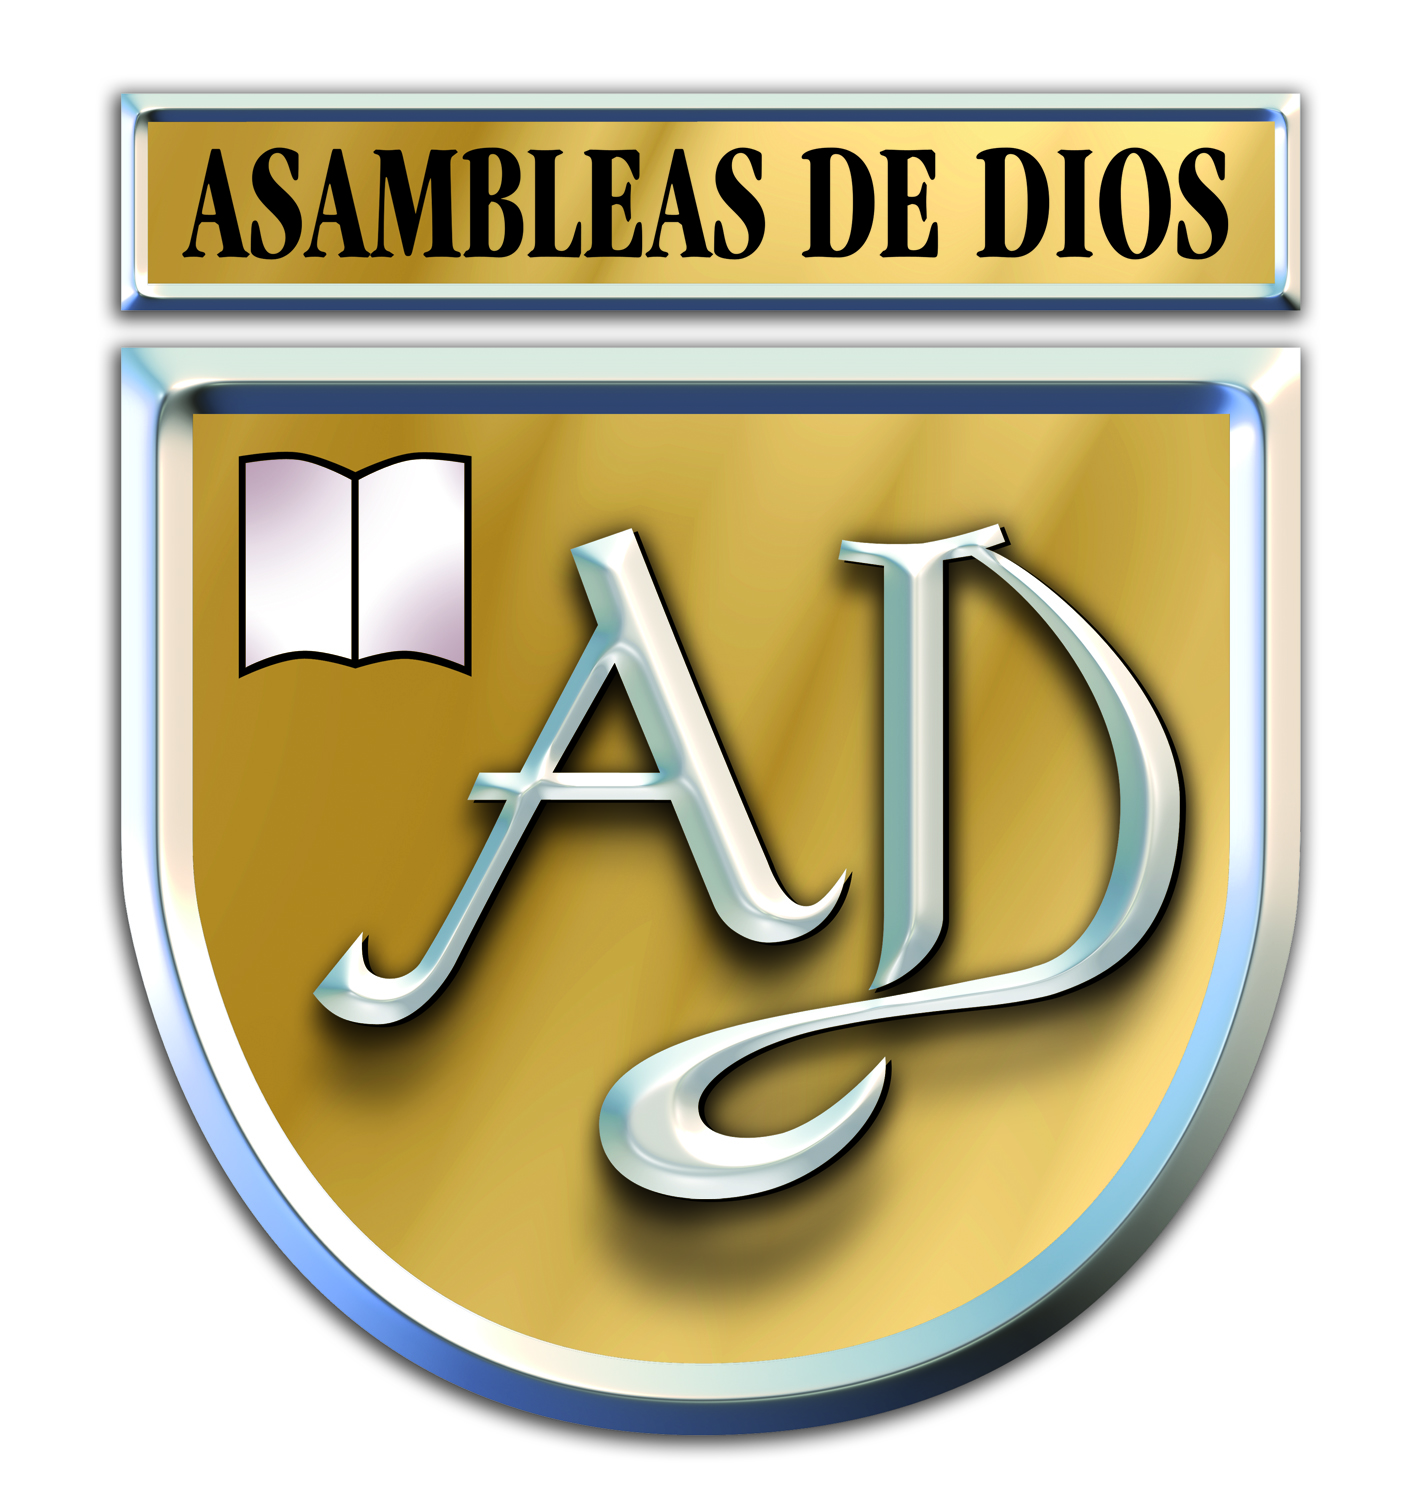 Logo Asambleas De Dios Png Hdpng.com 1417 - Asambleas De Dios, Transparent background PNG HD thumbnail